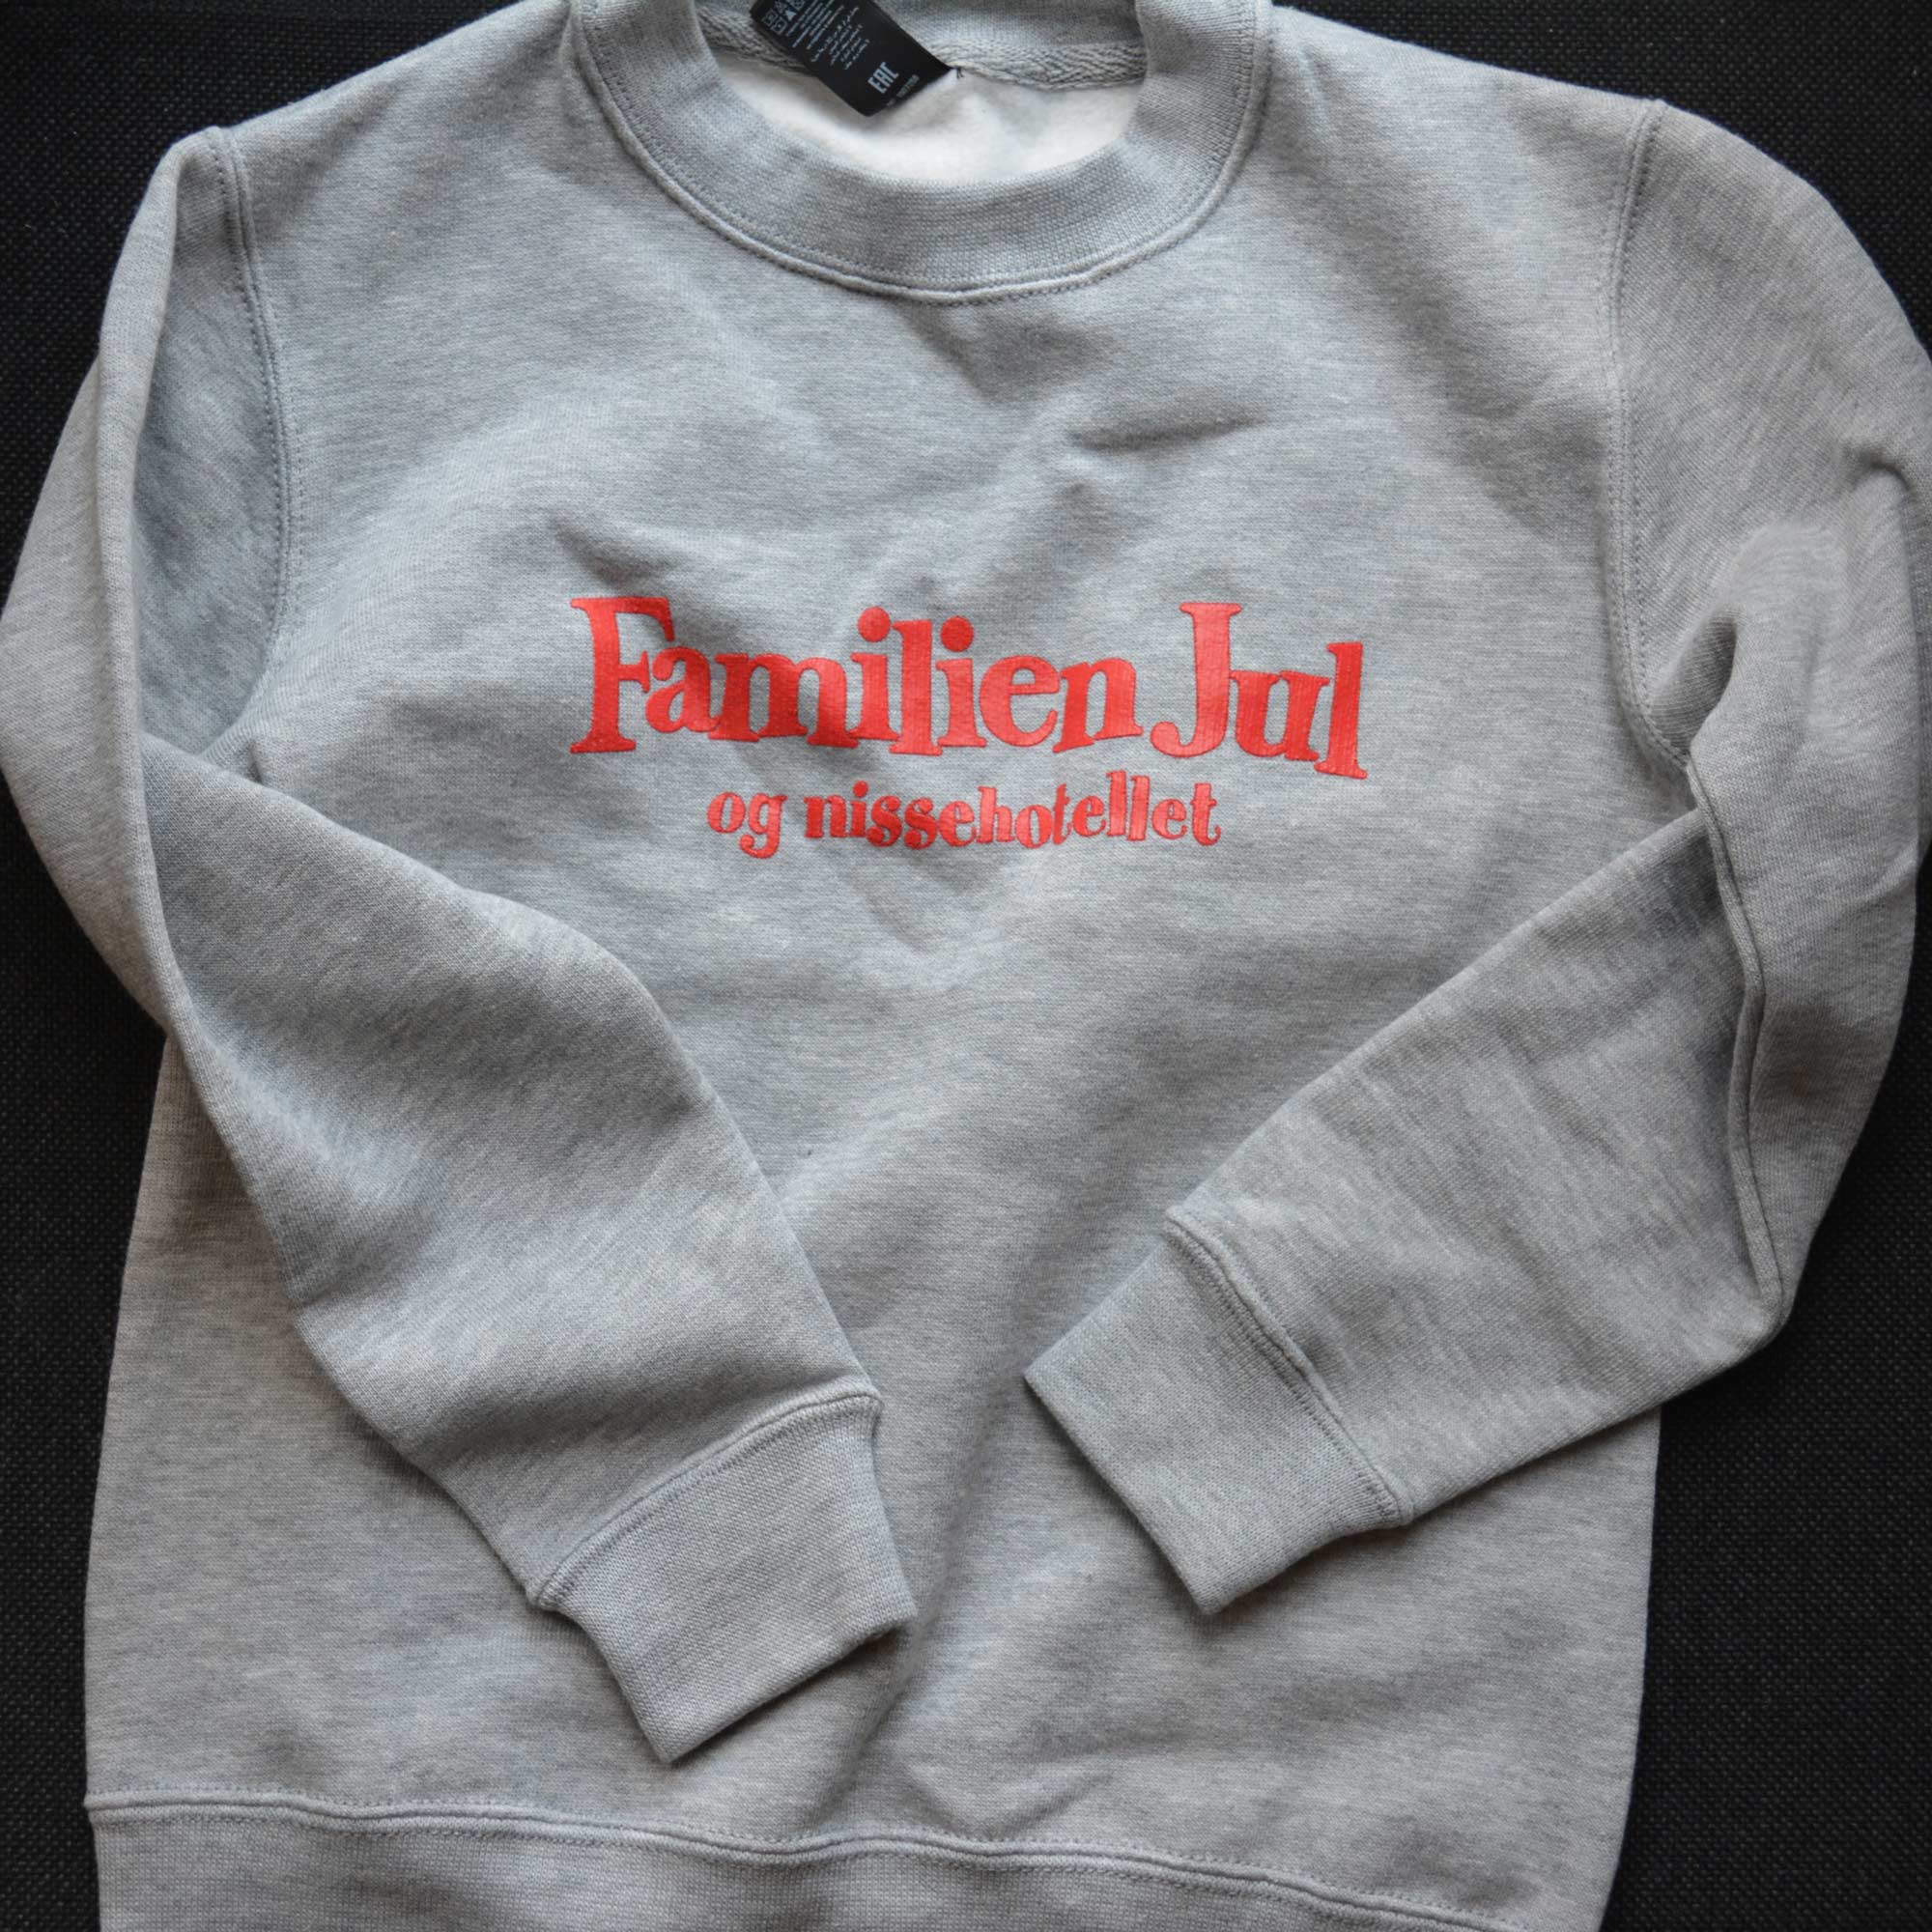 Merchandise - Sweatshirt med logo - Familien Jul